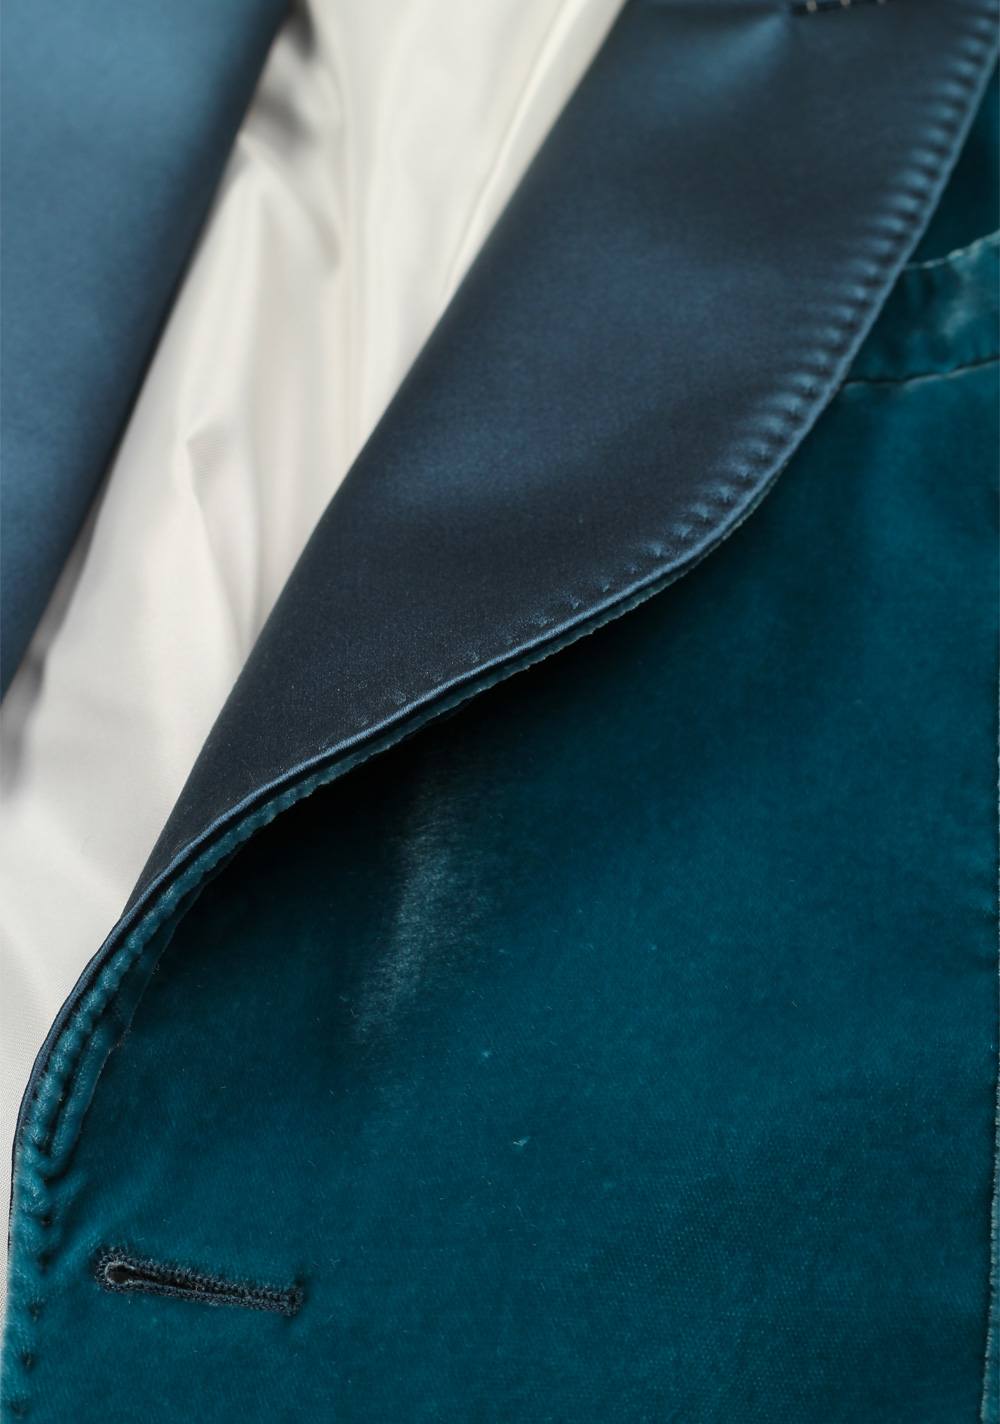 TOM FORD Shelton Velvet Teal  Sport Coat Tuxedo Dinner Jacket Size 48C / 38S U.S. | Costume Limité